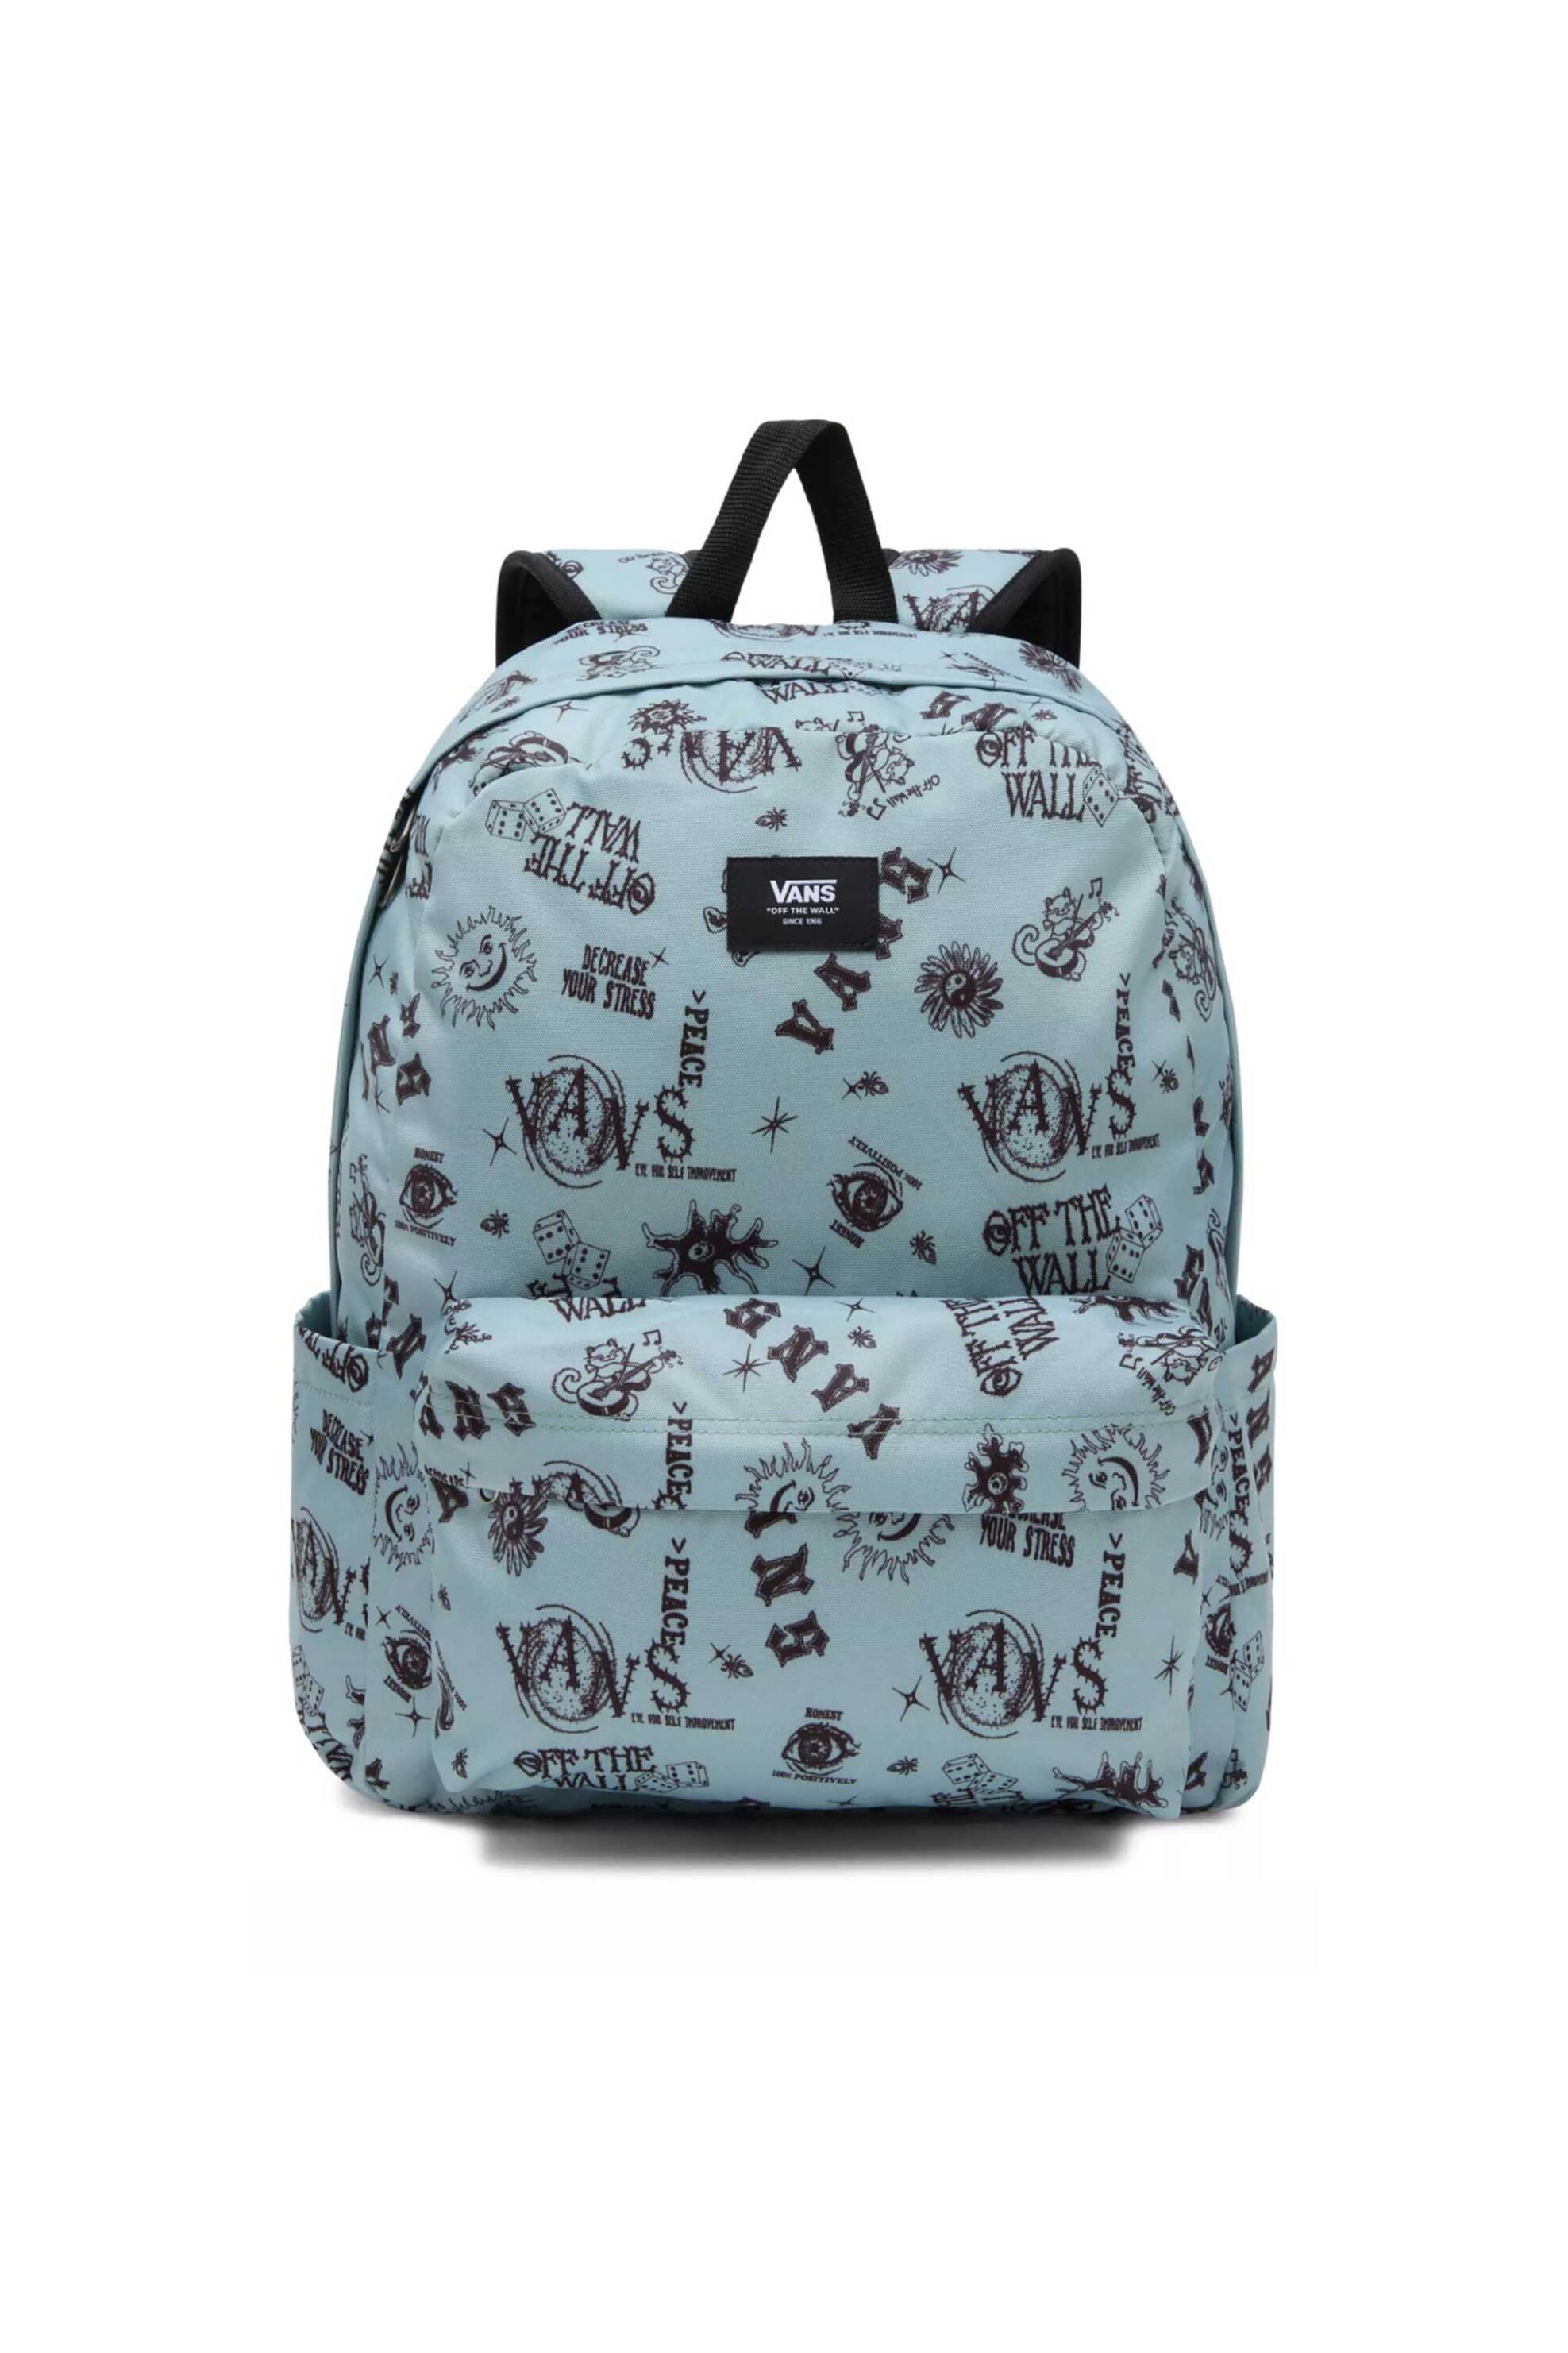 Ανδρική Μόδα > Ανδρικές Τσάντες > Ανδρικά Σακίδια & Backpacks Vans ανδρικό backpack με all-over contrast prints και logo patch "Old Skool" - VN000H4WCJL1 Τυρκουάζ